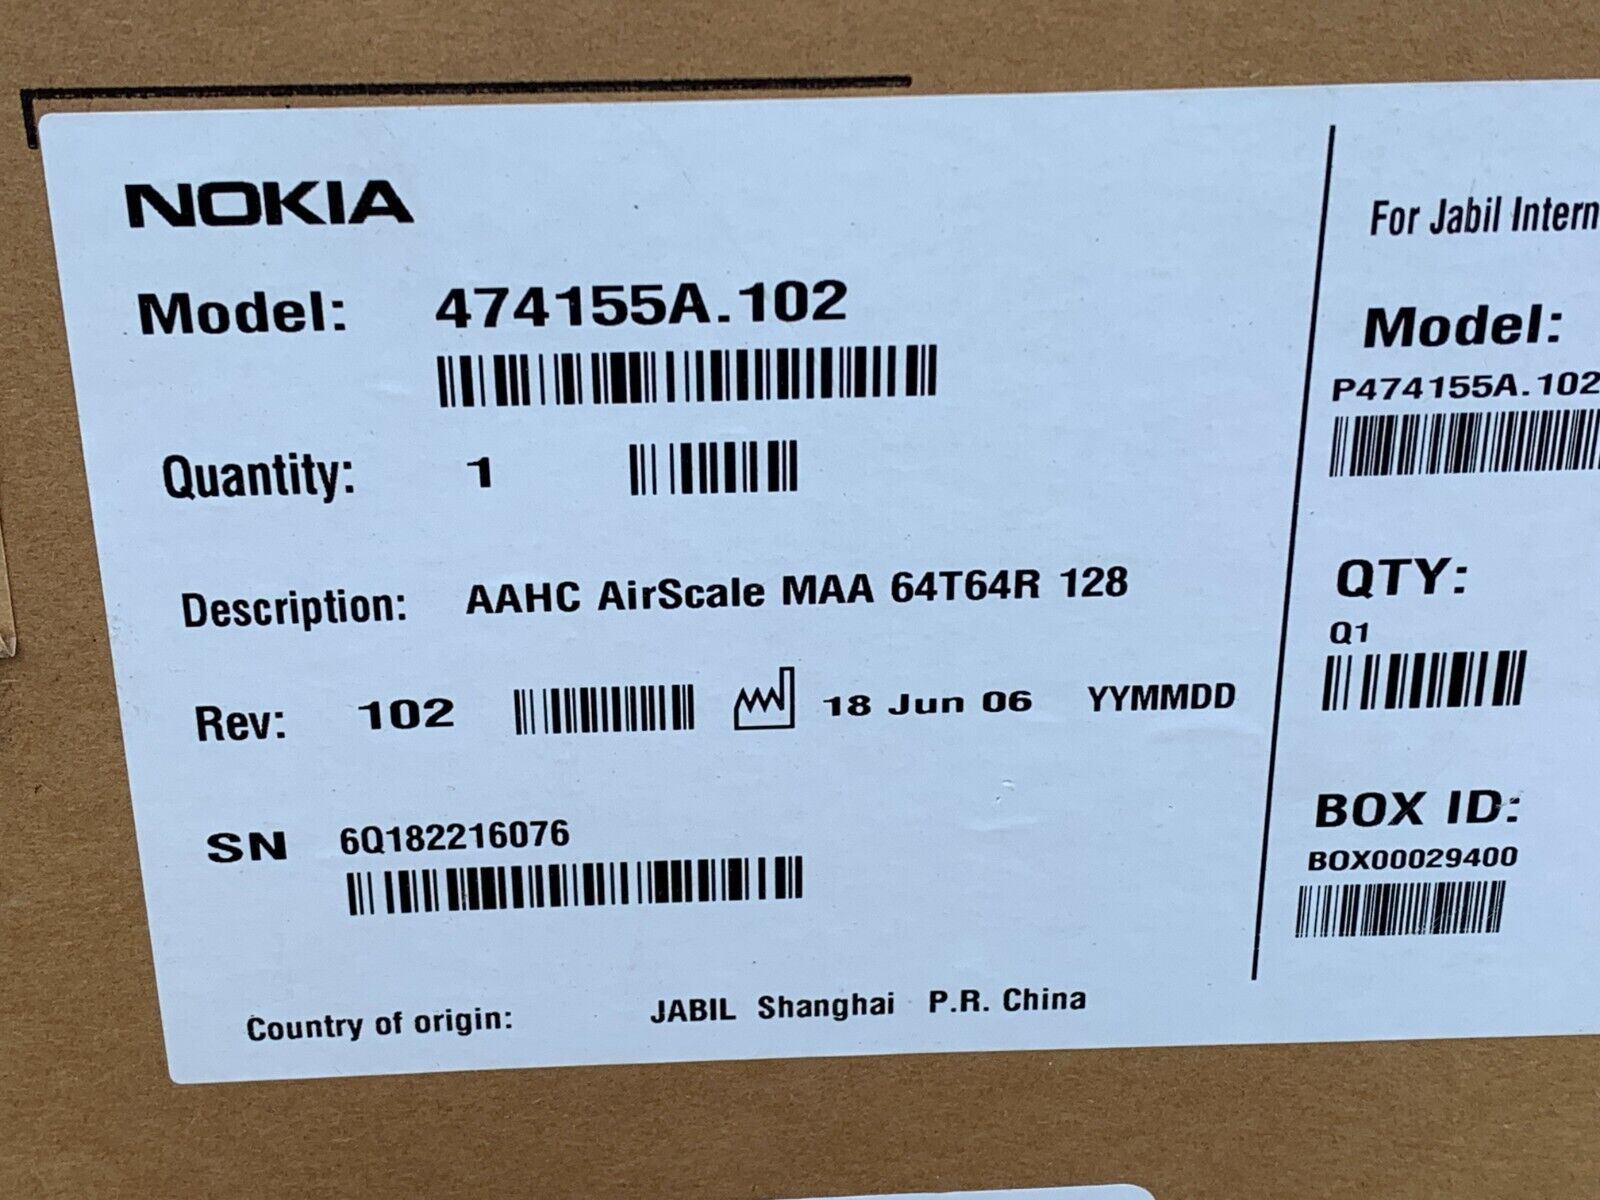 Nokia 474155A.102 AAHC AirScale MAA 64T64R 128 Antenna - NIB